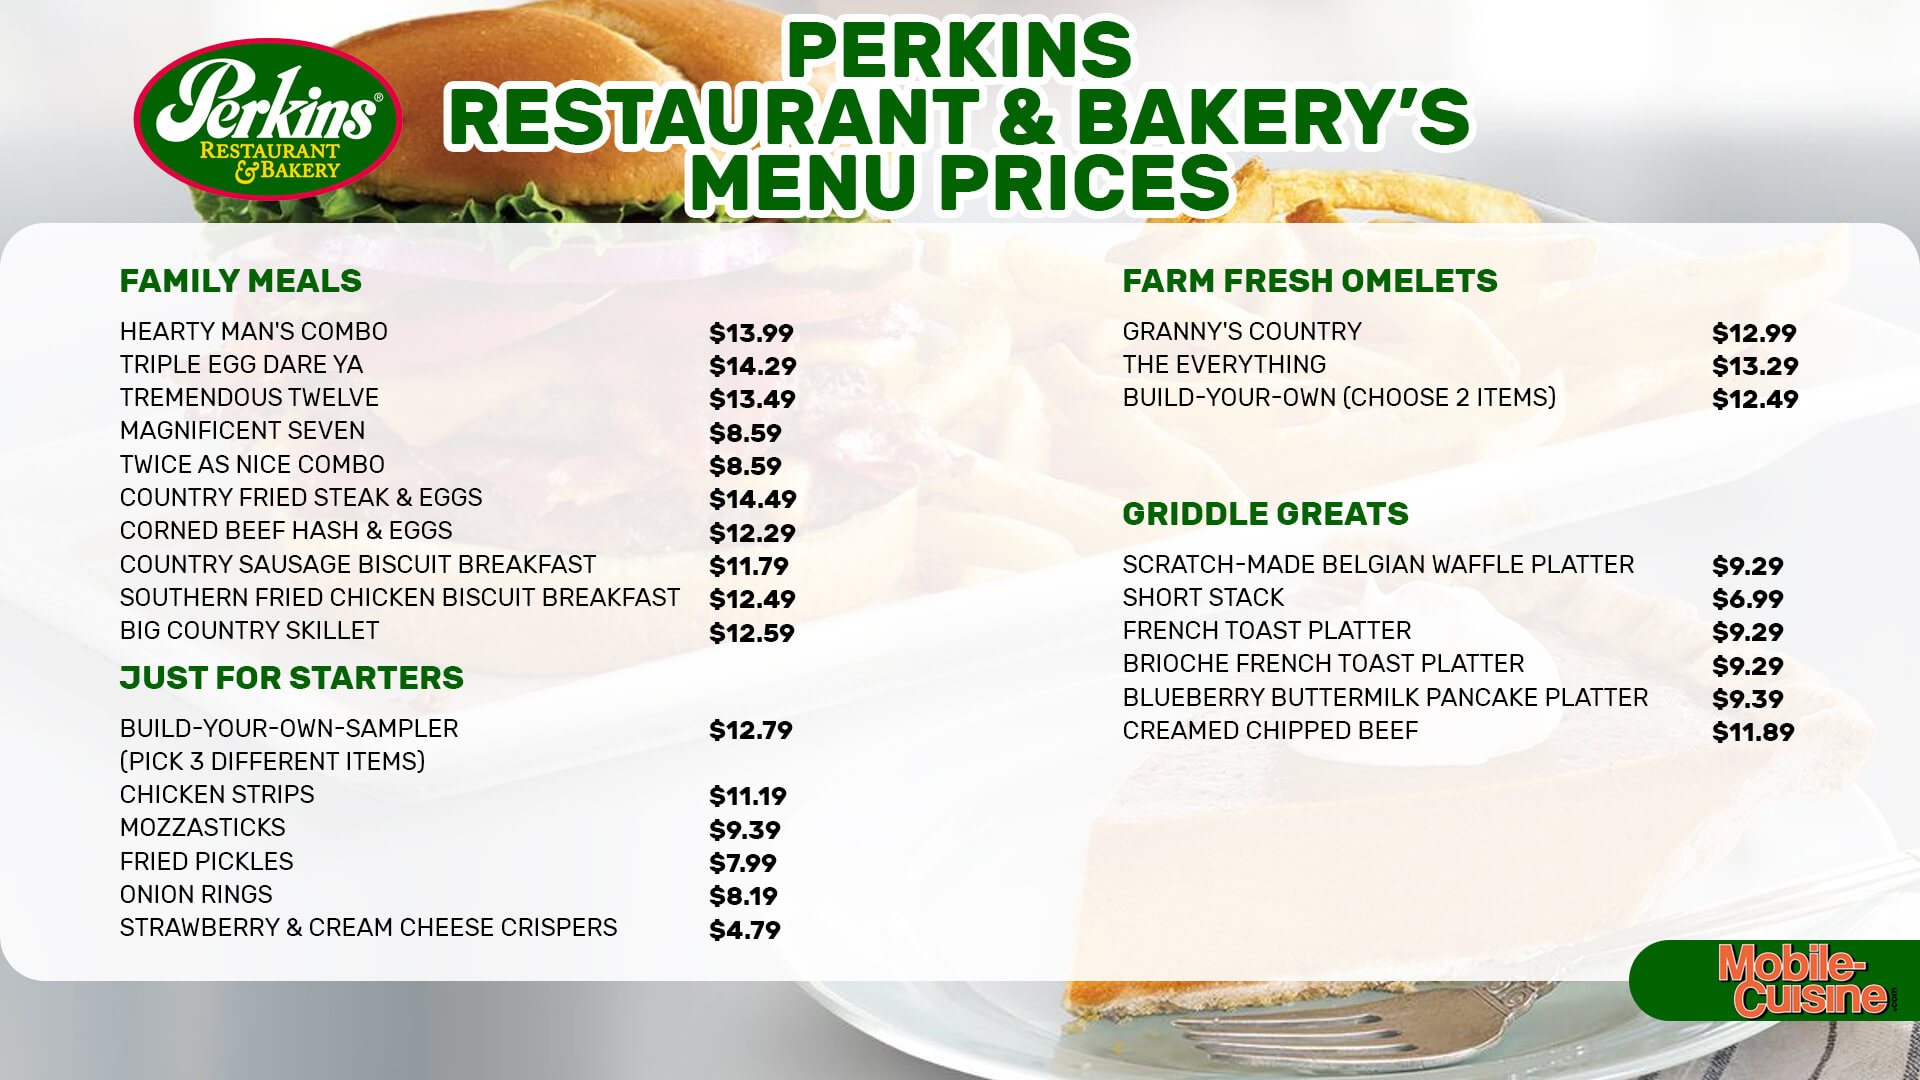 Perkins menu prices